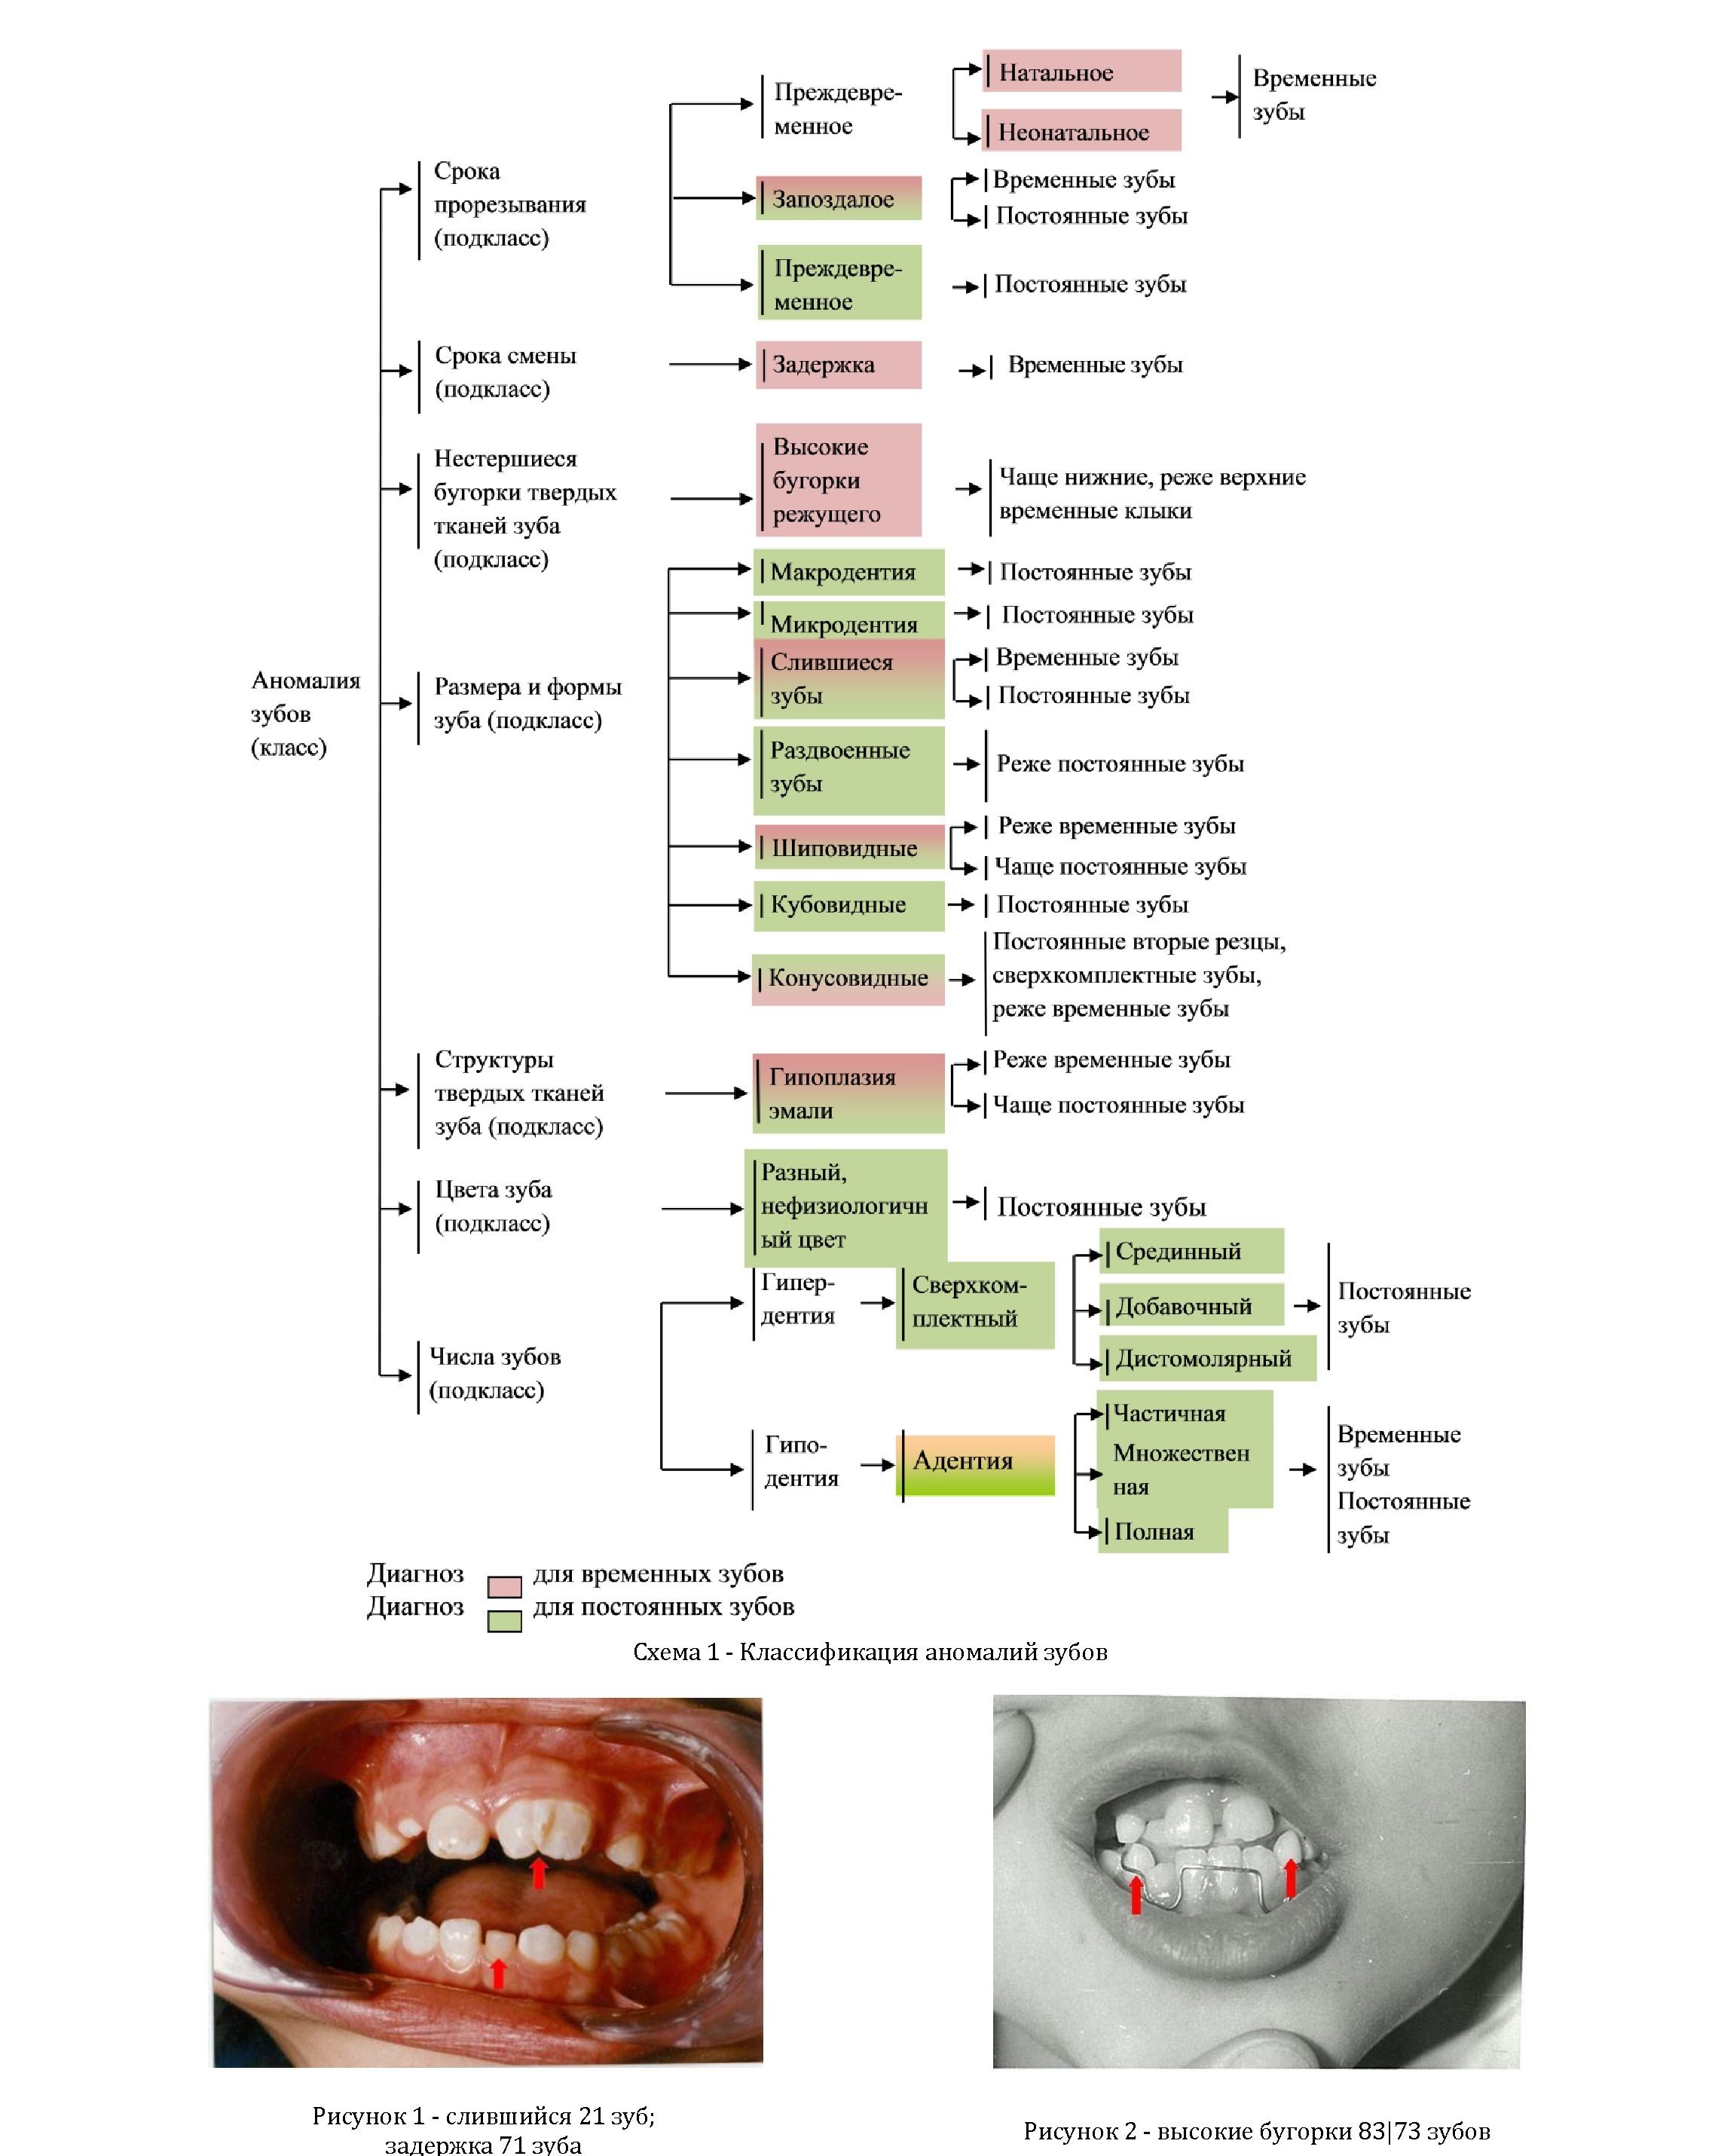 Аномалии зубов: классификация, терминология с подходом диагностики